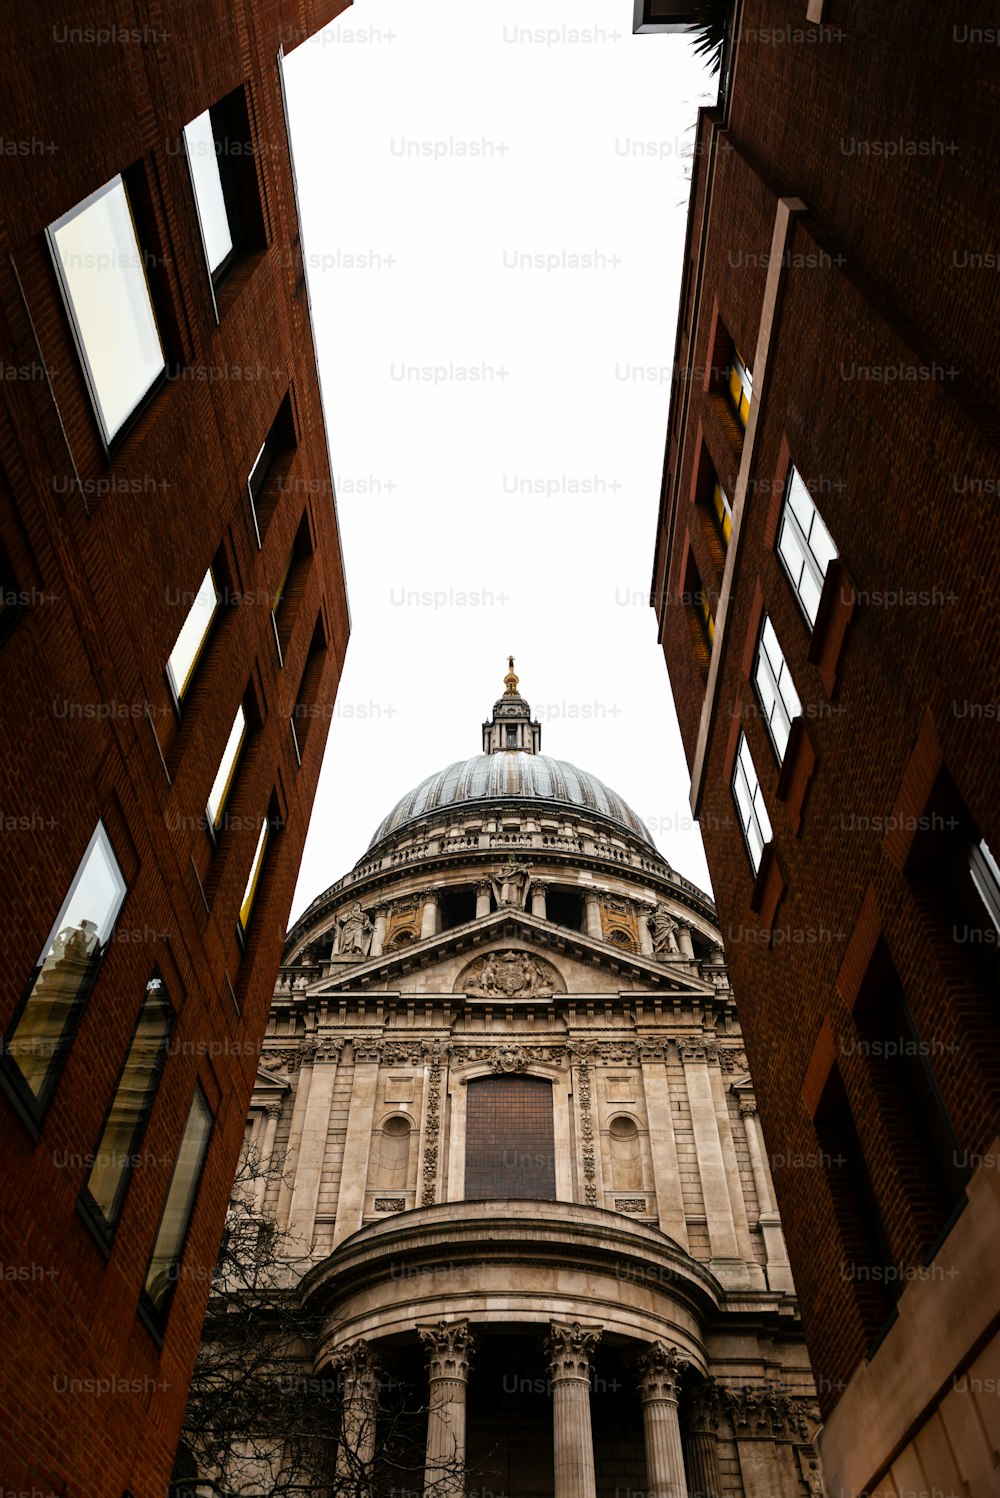 Vista lateral de la Catedral de San Pablo en Londres vista a través de una calle estrecha. Construido después del Gran Incendio de Londres de 1666, es la obra maestra de Christopher Wren y una de las atracciones más turísticas de la ciudad.